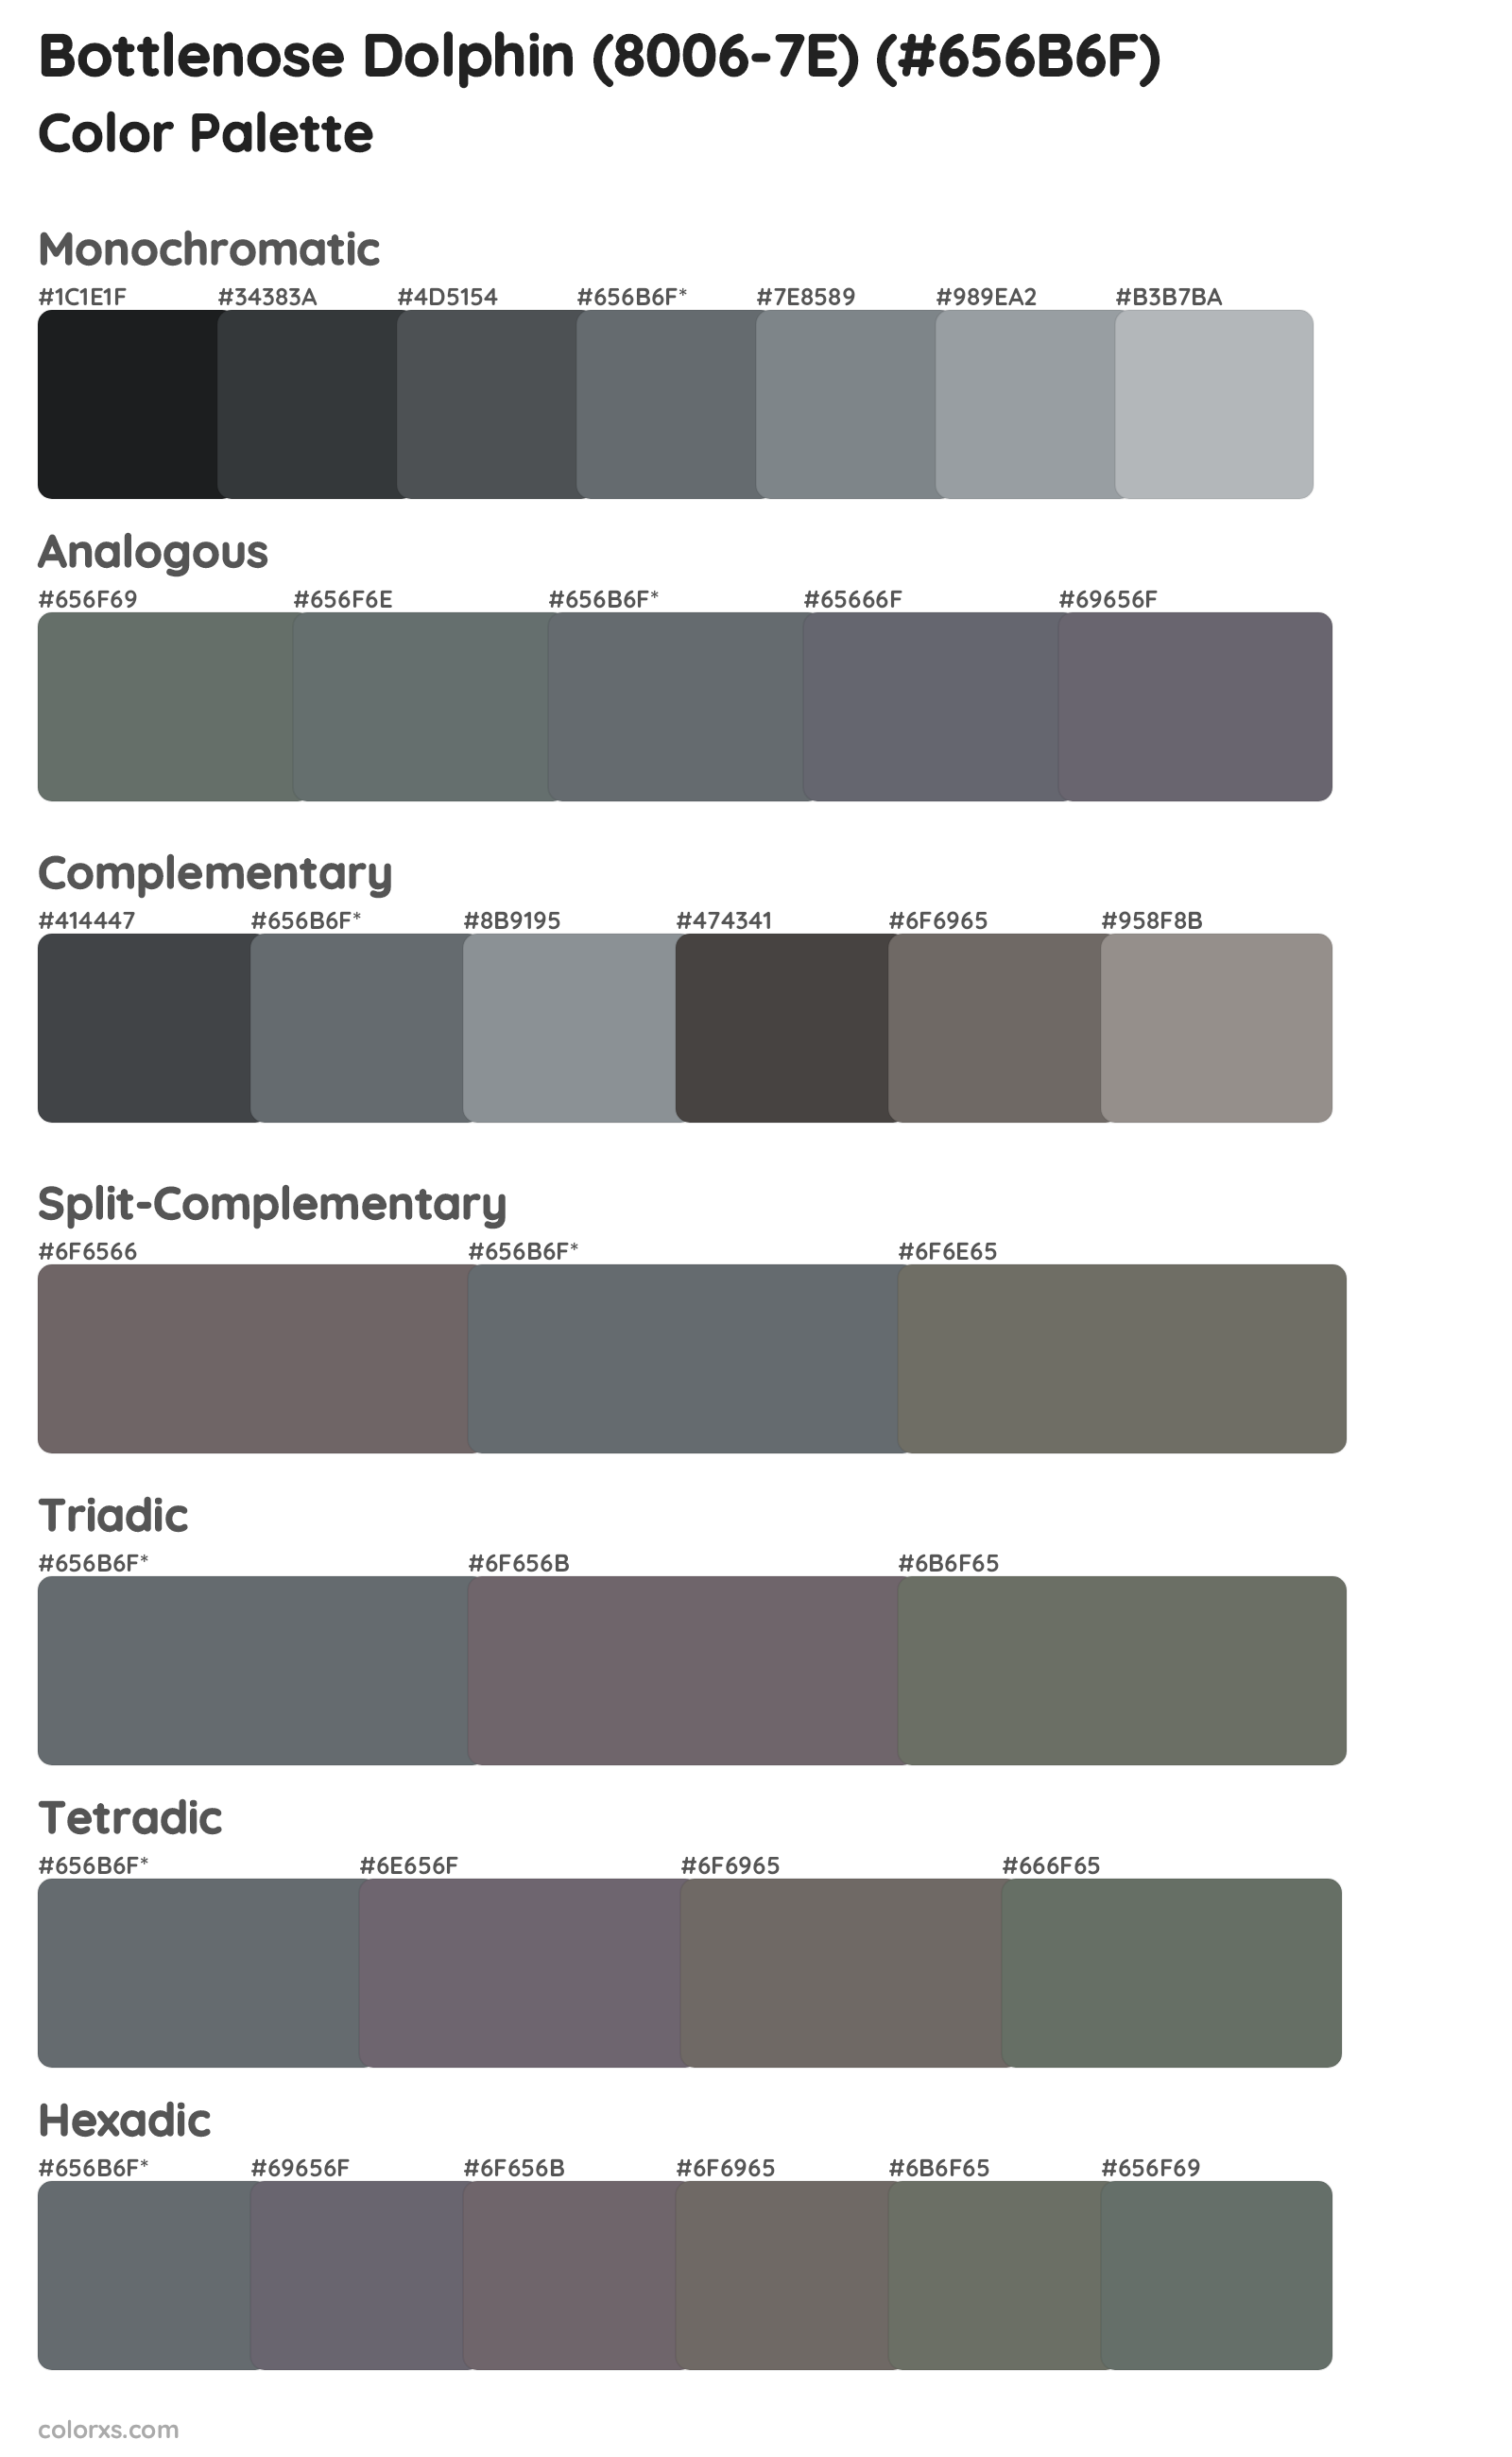 Bottlenose Dolphin (8006-7E) Color Scheme Palettes